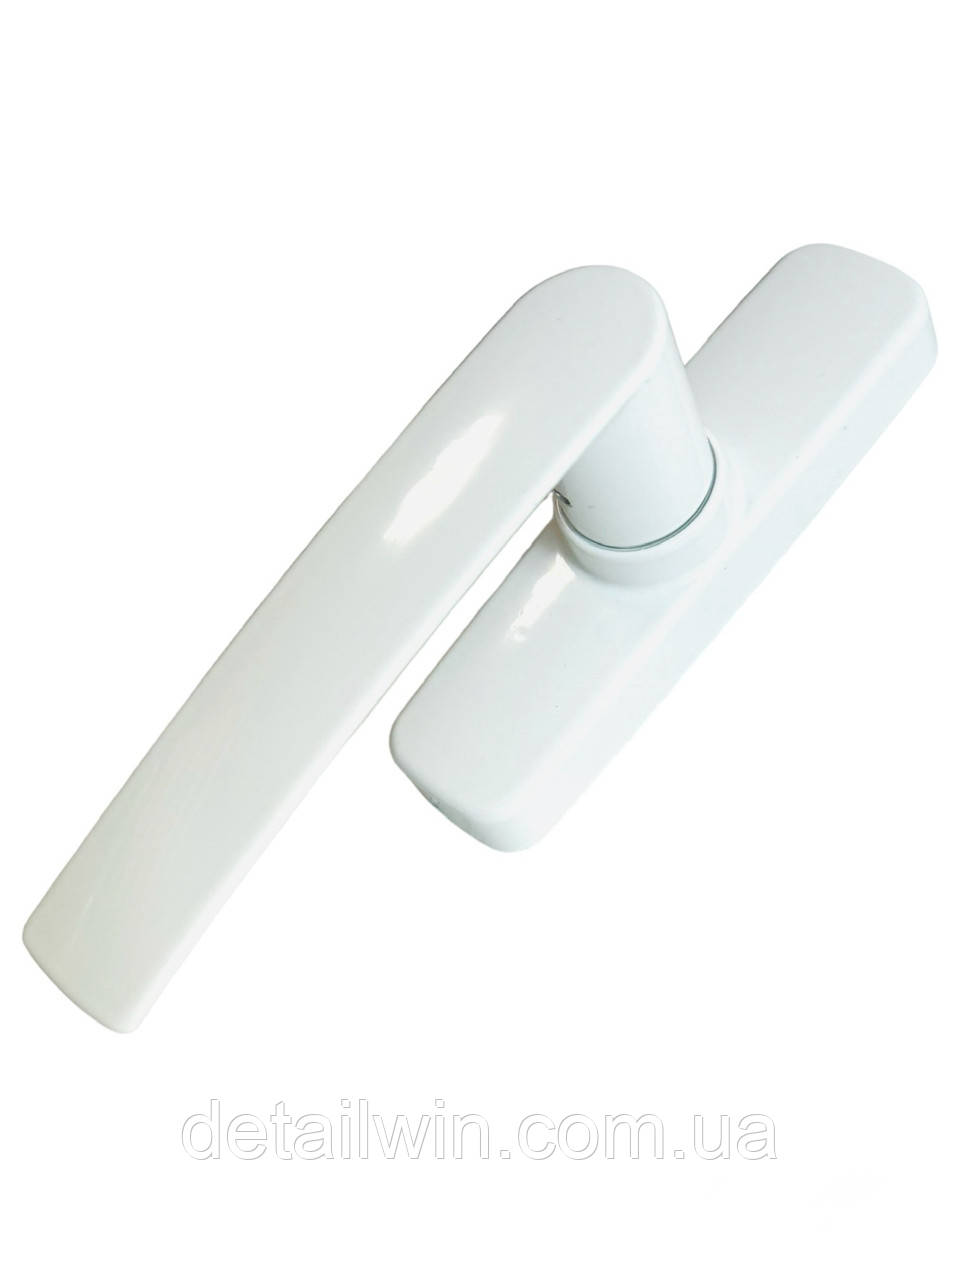 Ручка віконна Fapim GEA біла для алюмінієвих вікон 0530B